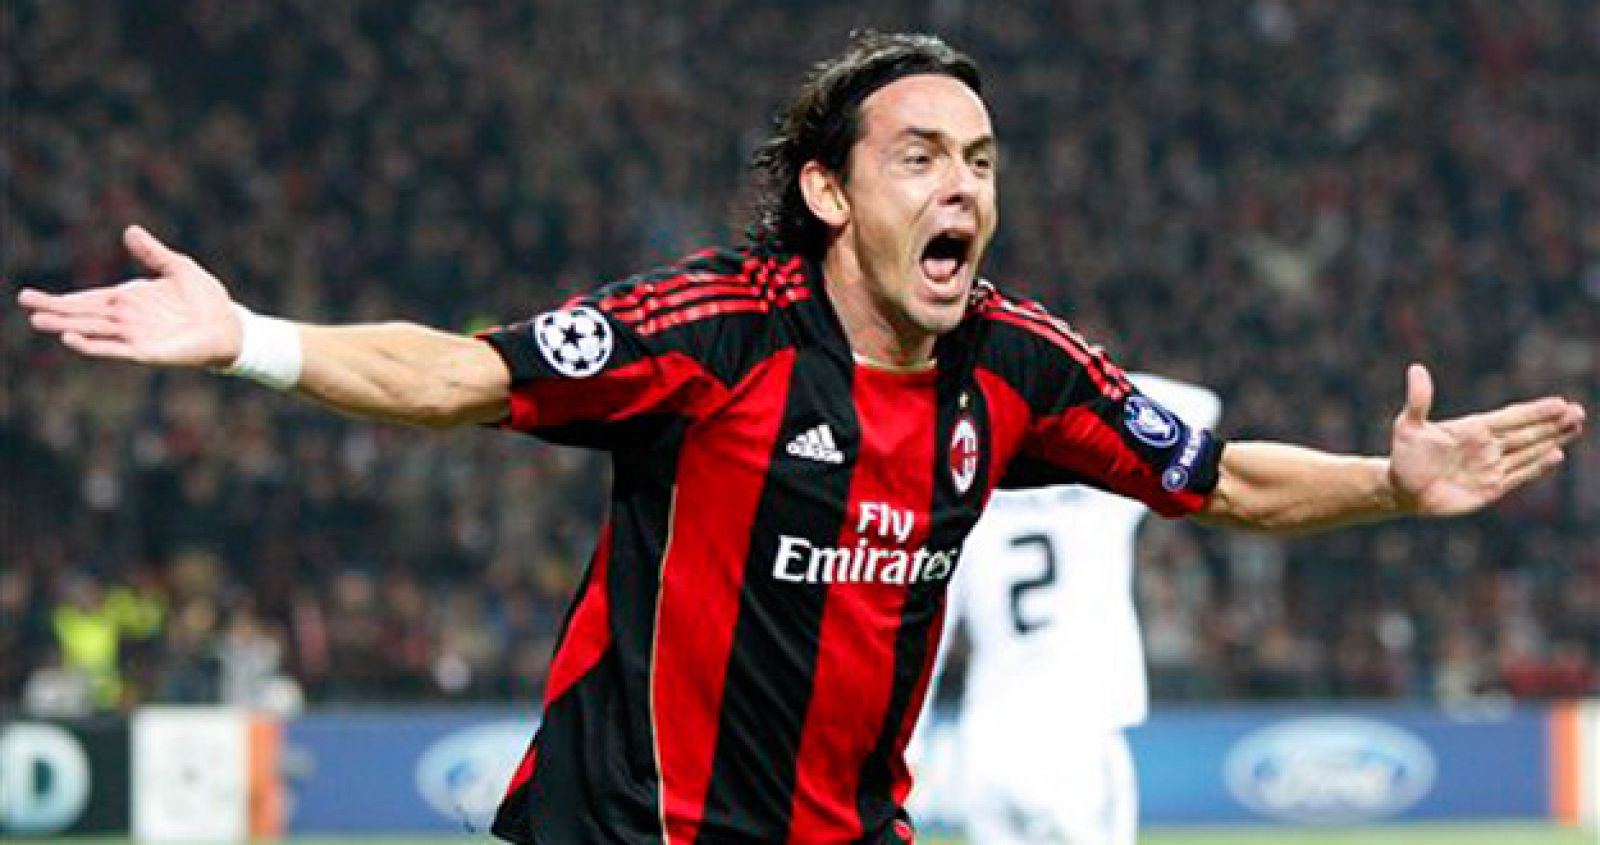 Filippo Inzaghi, en una imagen de archivo, celebra un gol con el Milán AC.